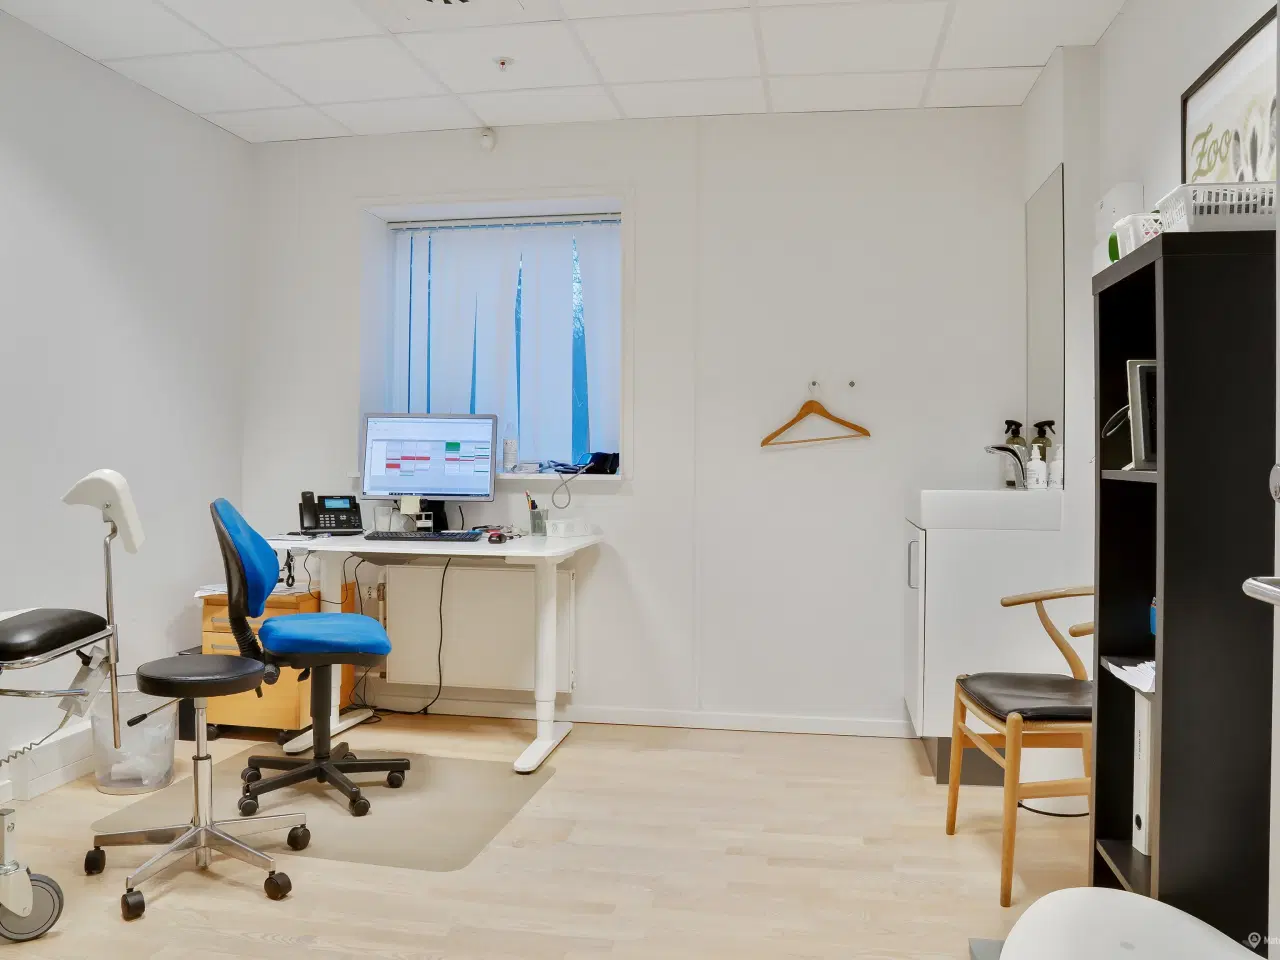 Billede 3 - Kliniklokaler/behandlerrum i moderne Sundhedshus Brøndby